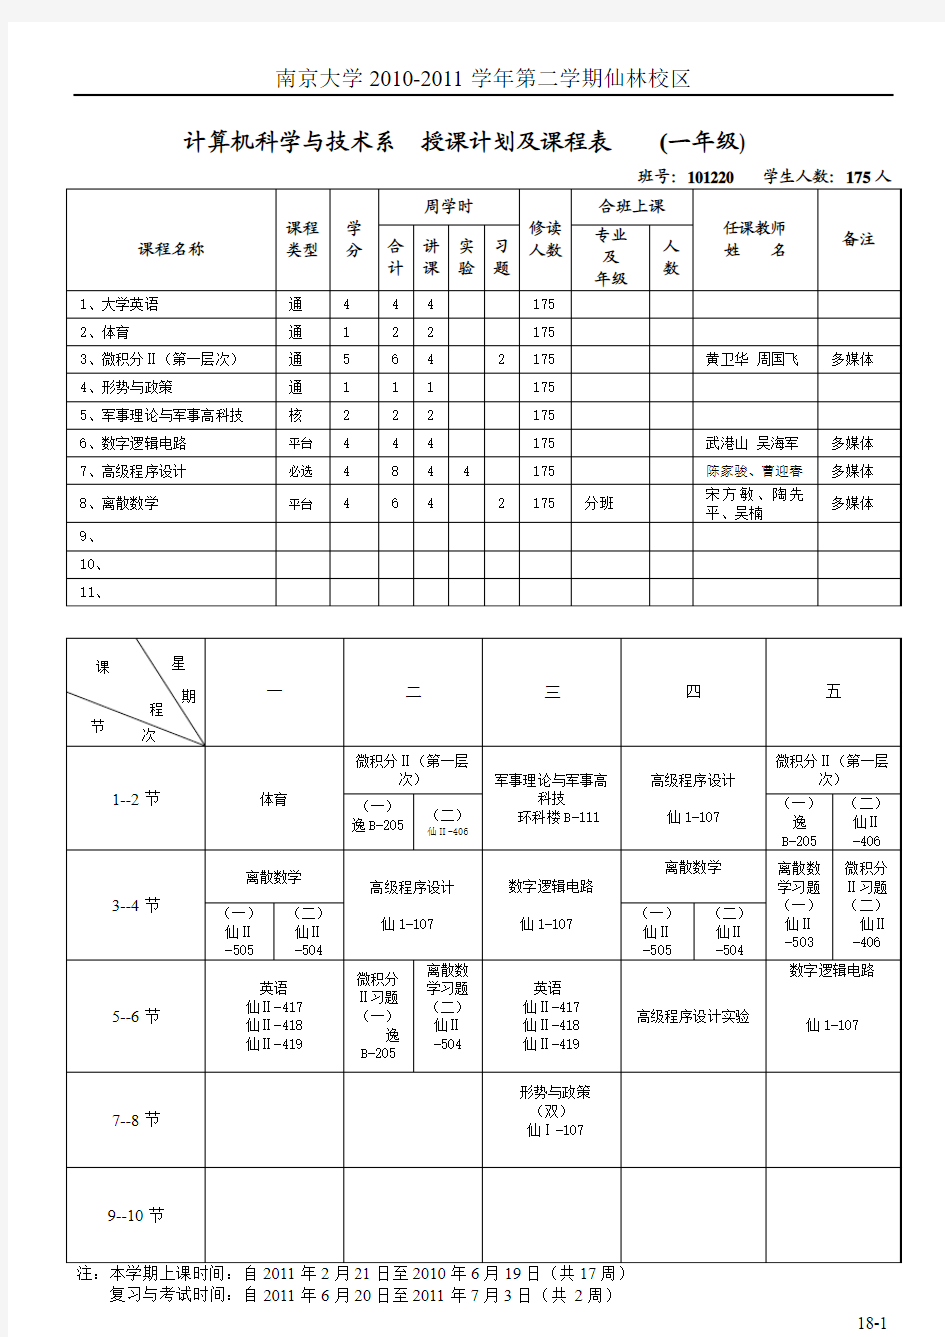 南京大学计算机系 1-3年级 上半学期课表